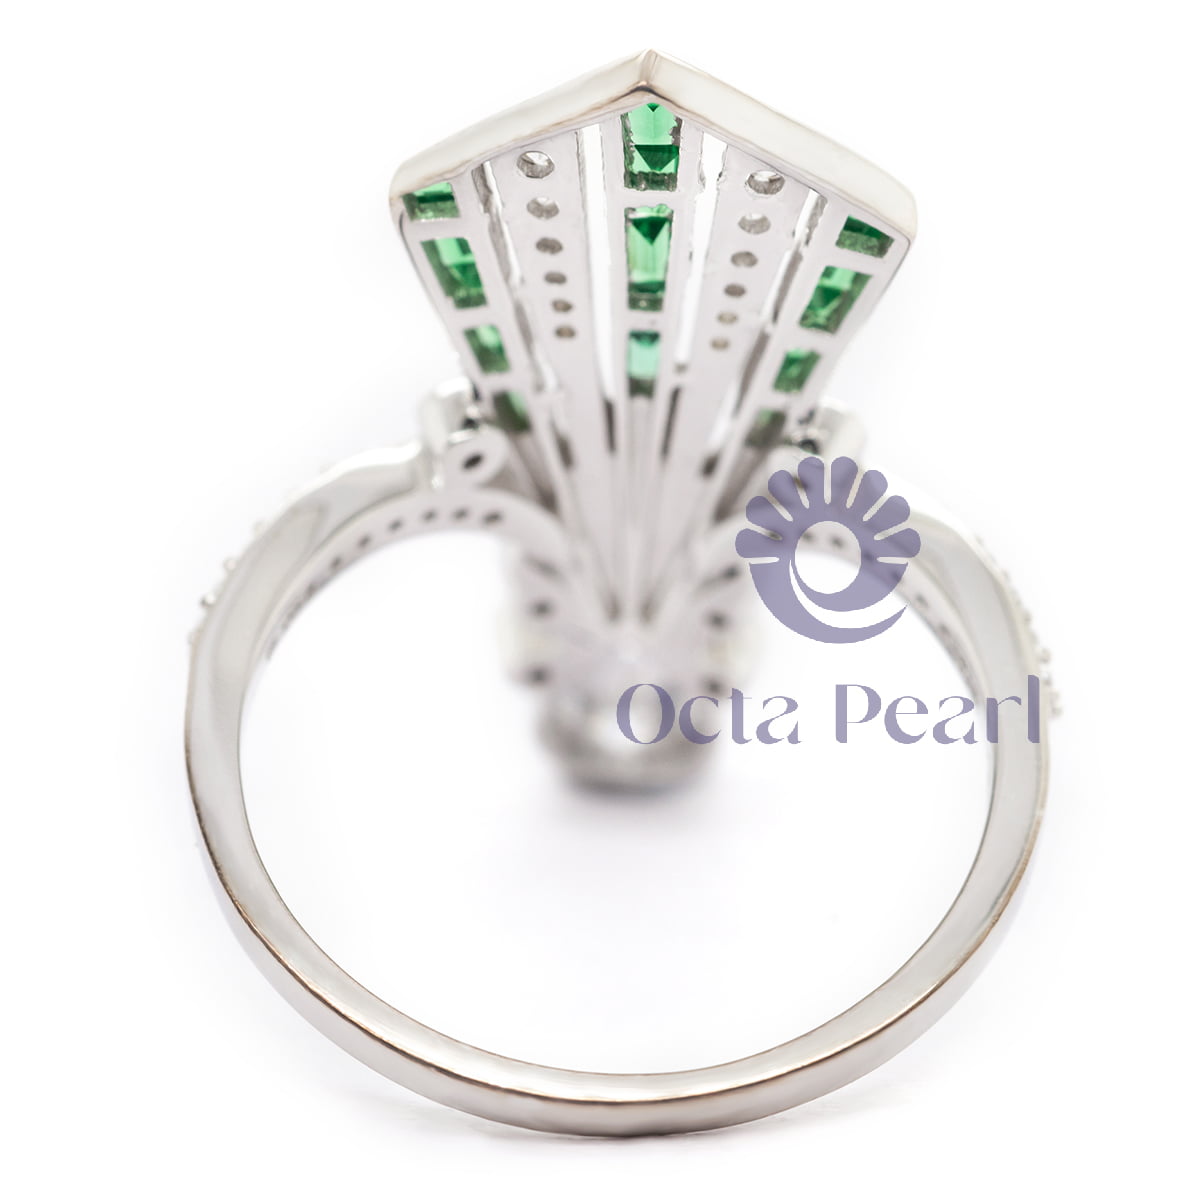 Pear & Green Baguette Cut CZ Stone V Shape Art Nouveau Vintage Ring